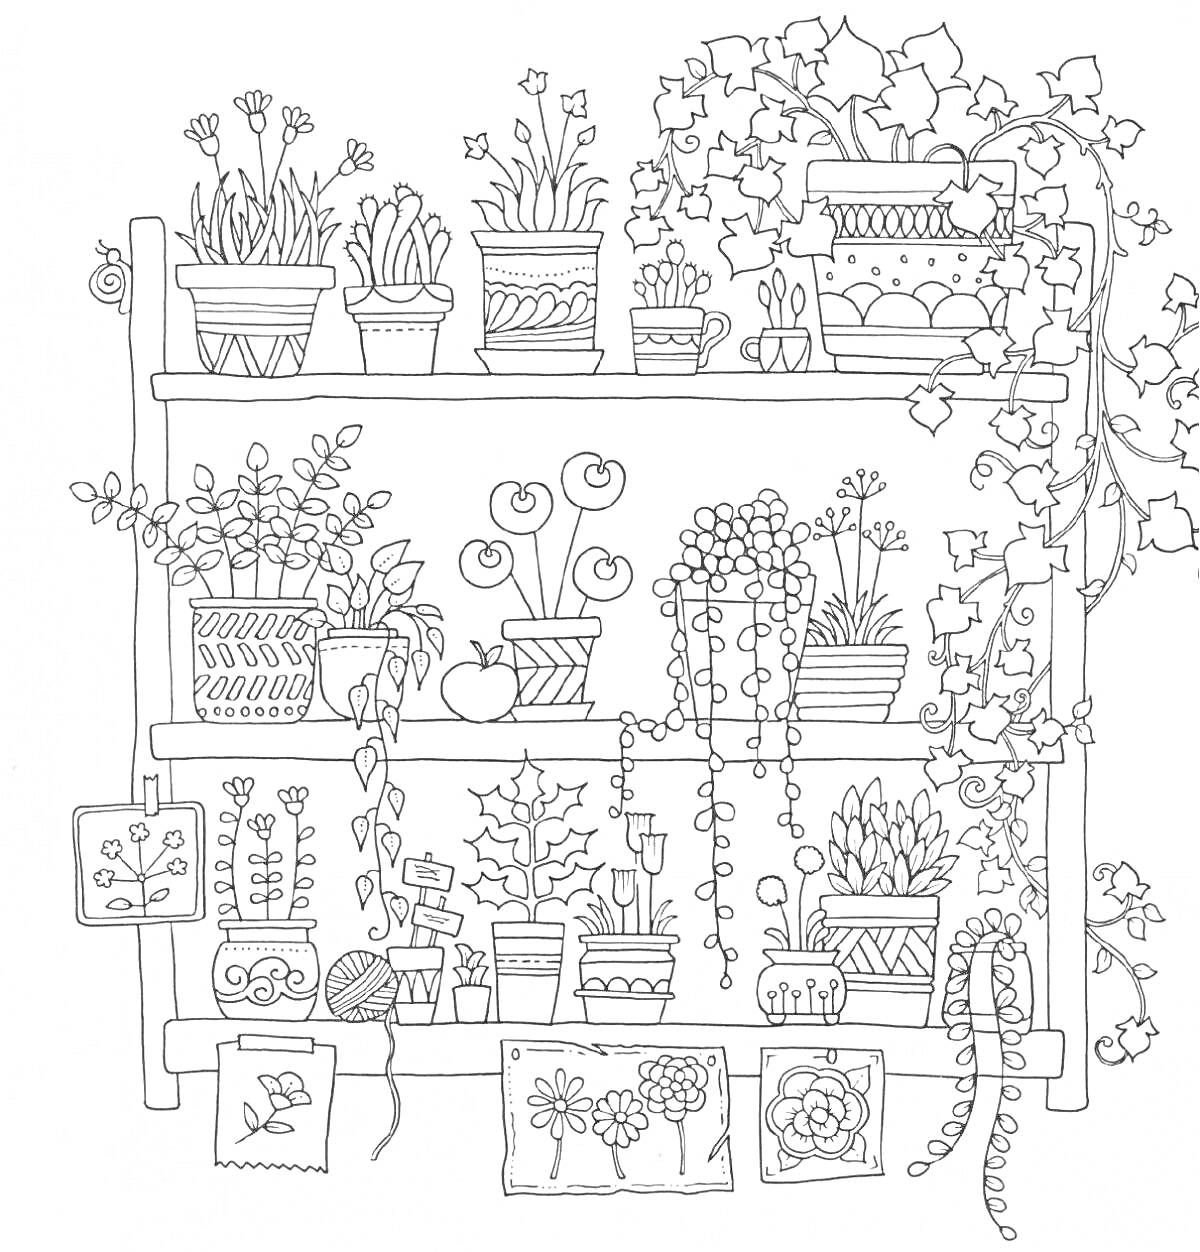 Цветочный сад с полками, горшками, цветами и декоративными элементами